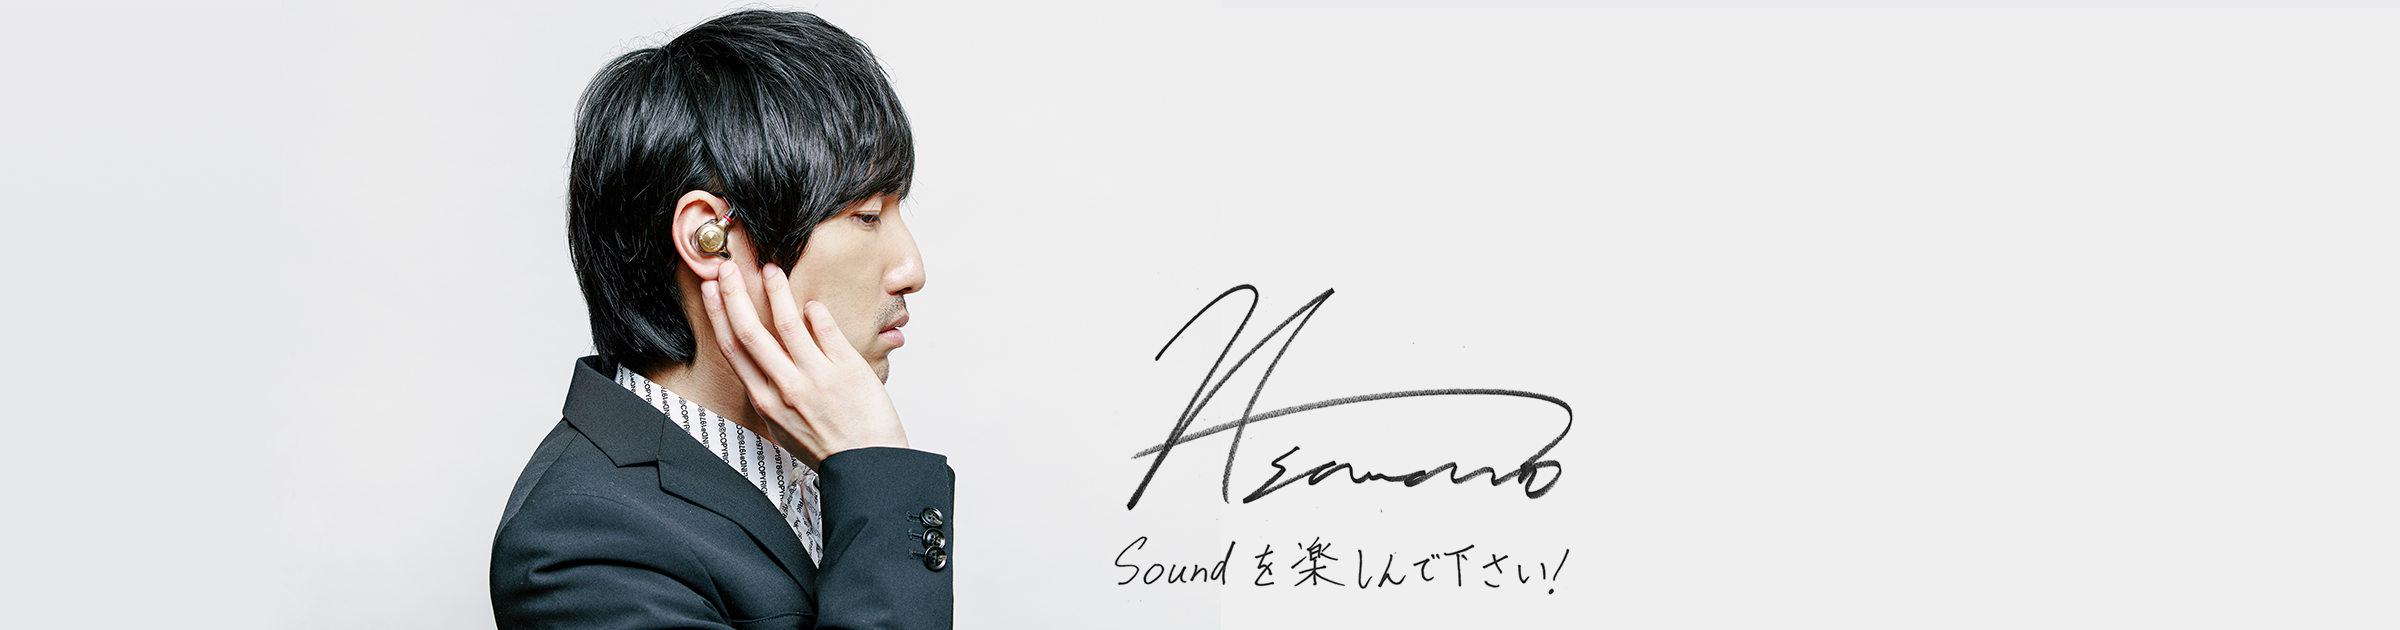 澤野弘之さんの手書きサインとメッセージ：Soundを楽しんでください！